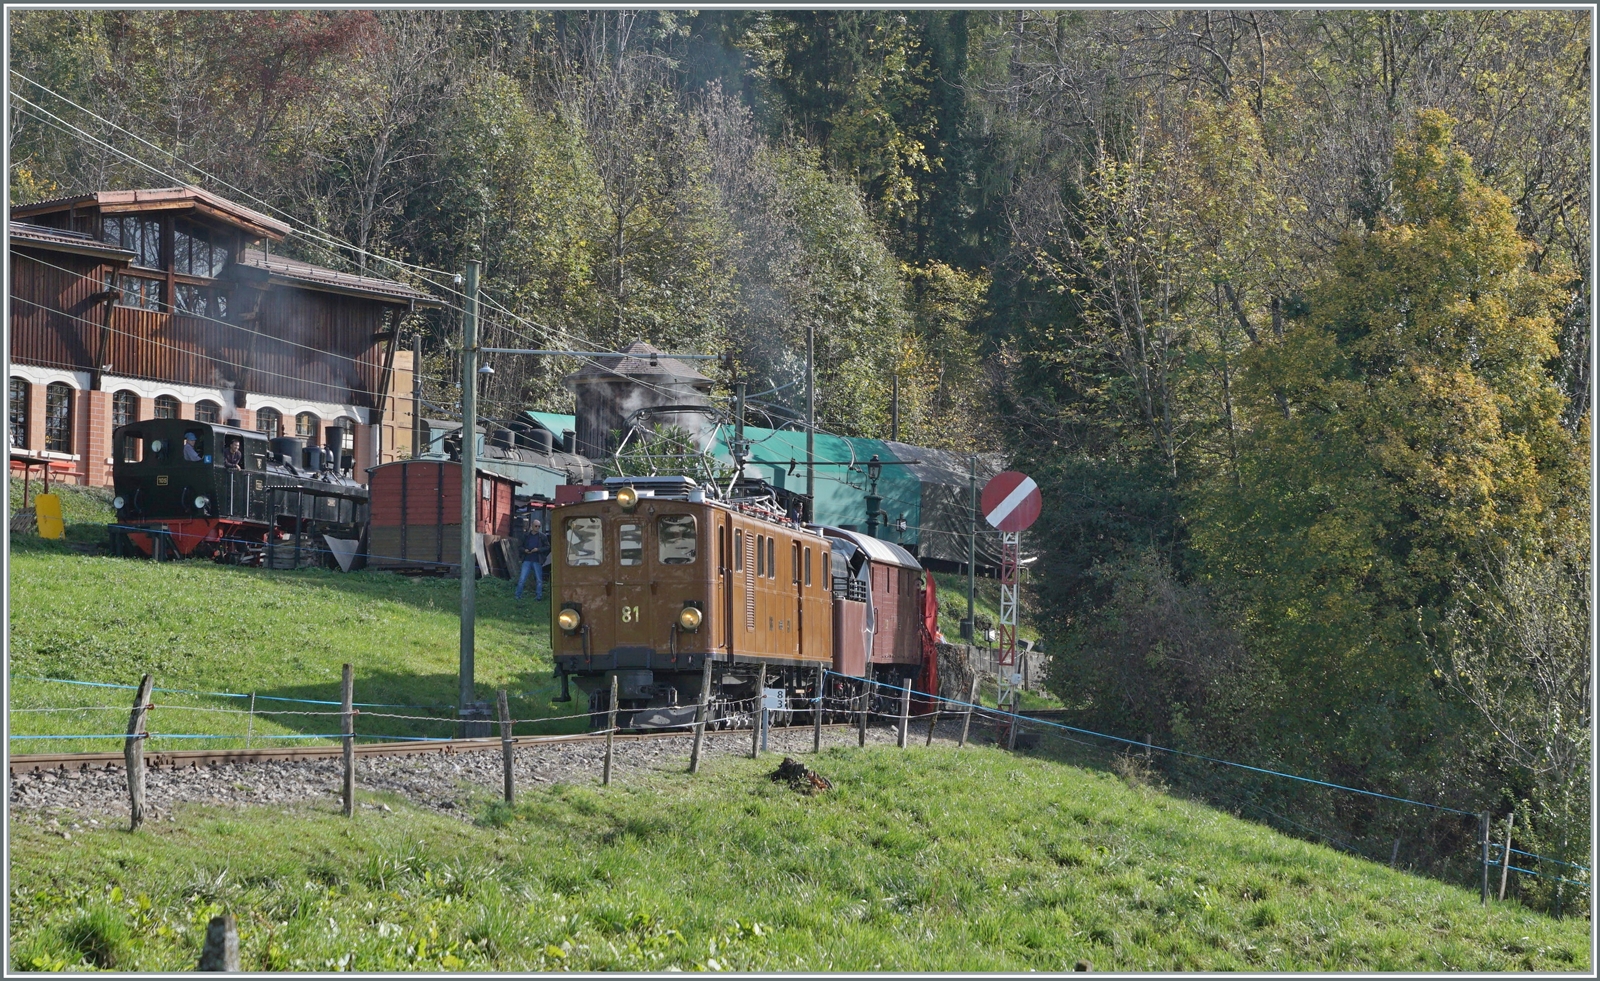 Ein eher seltenes Bild, welches wohl auch zu Betriebszeit der Ge 4/4 81 und der Dampfschneeschleuder bei der RhB/Bernina Bahn wohl kaum gegeben hatte, schade nur fehlt der Schnee, doch der wäre so Ende Oktober doch etwas zu früh...
Das Bild entstand bei Chaulin.

30. Oktober 2022